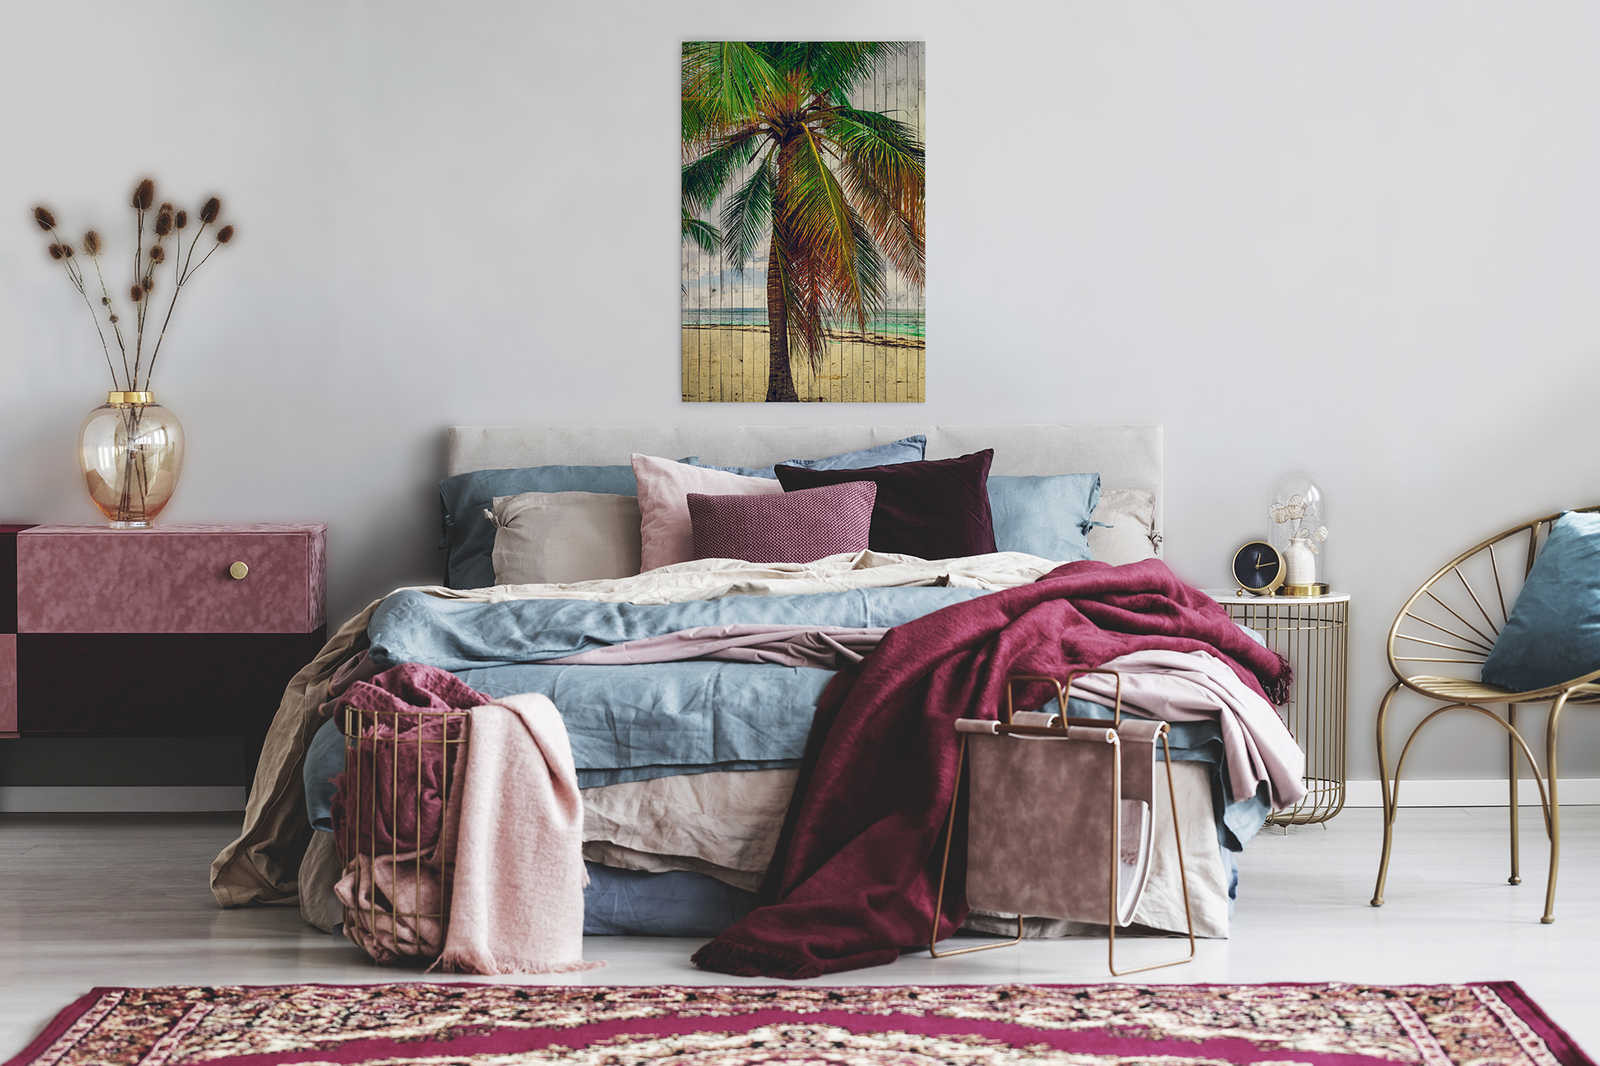             Tahití 3 - Cuadro en lienzo de palma con sensación de vacaciones - estructura de panel de madera - 0,60 m x 0,90 m
        